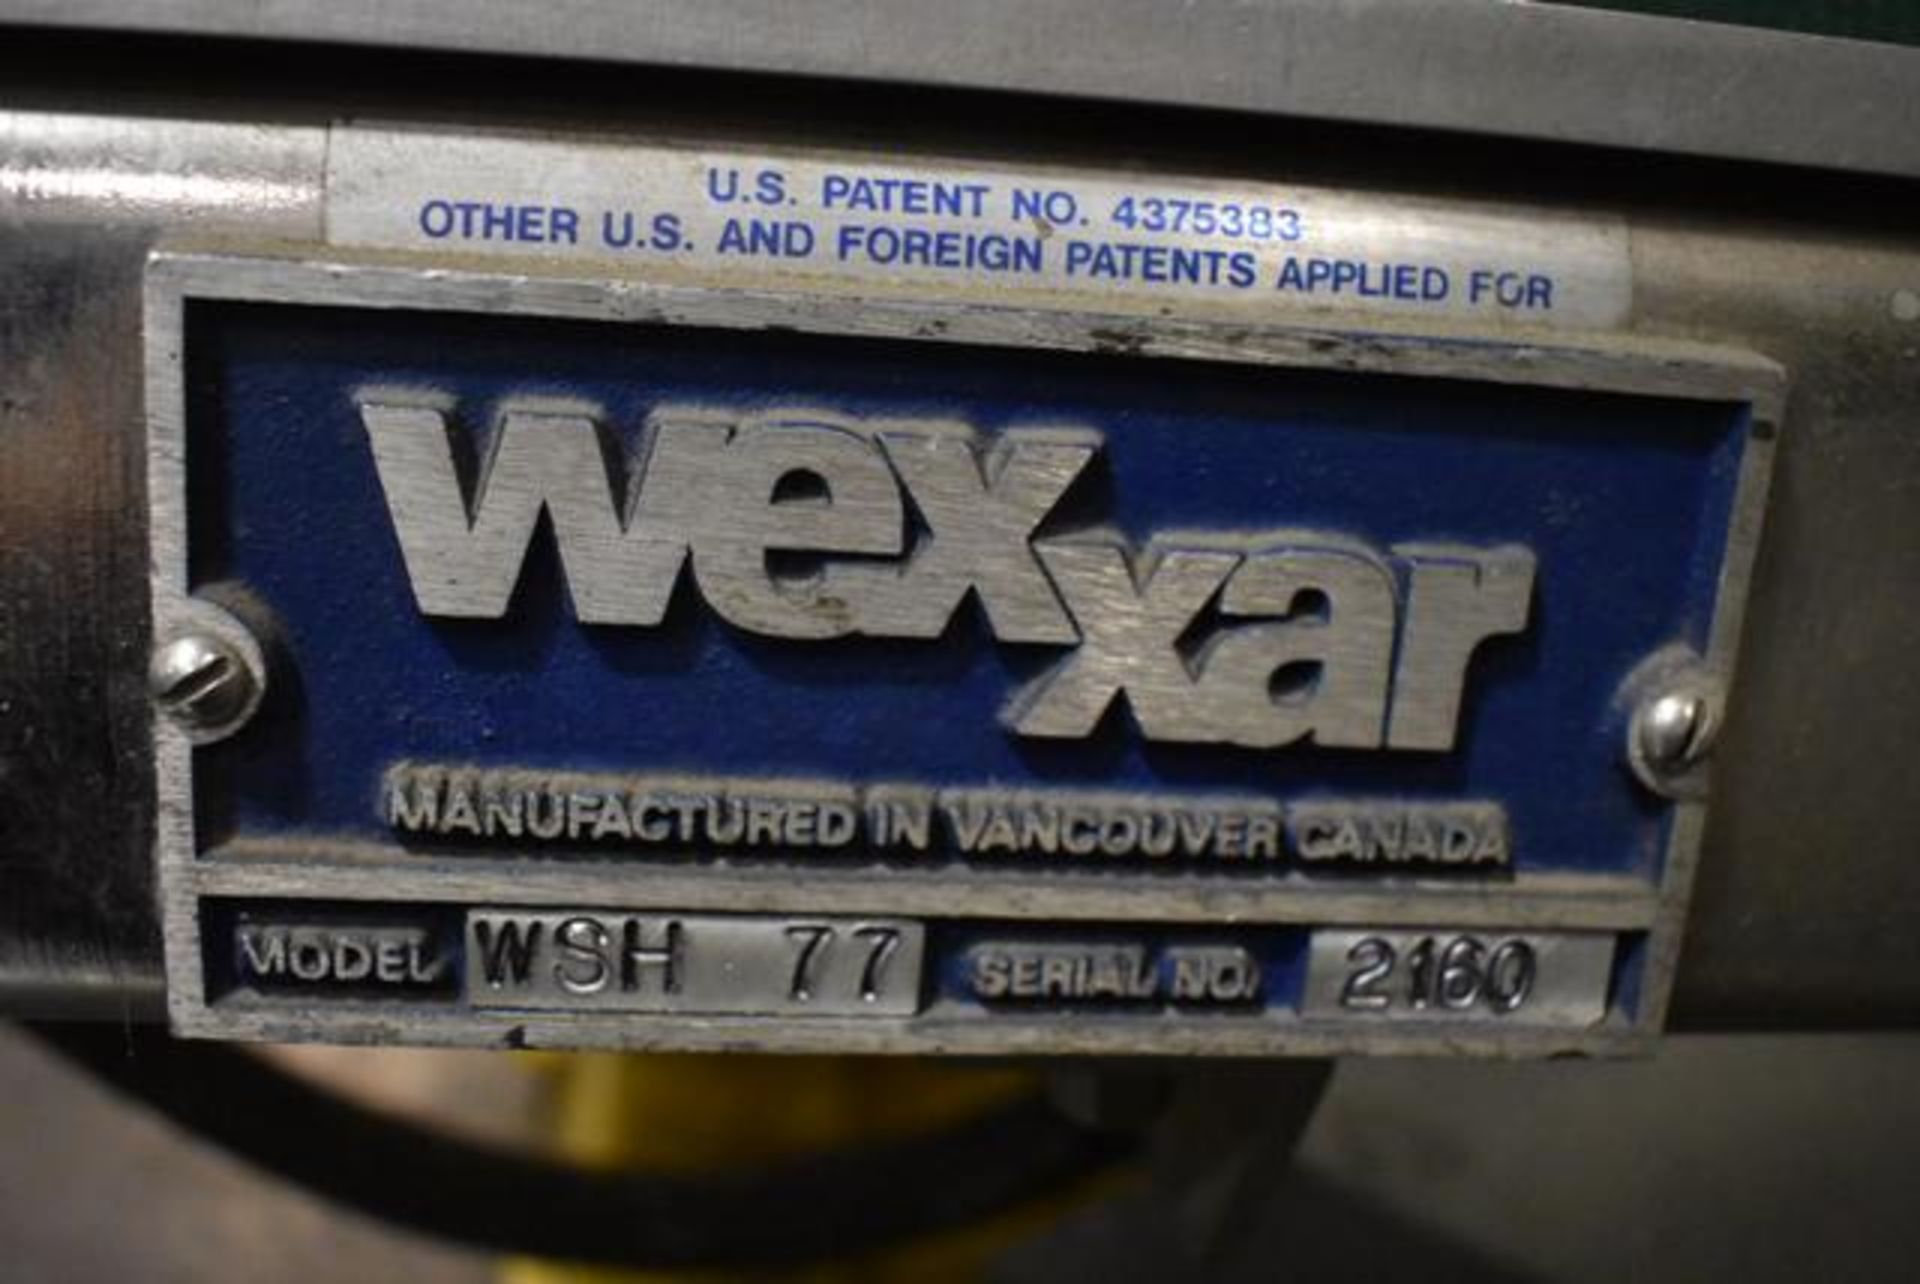 Wexxar Model #WSH77 Packaging Machine, SN 2160 - Image 3 of 4